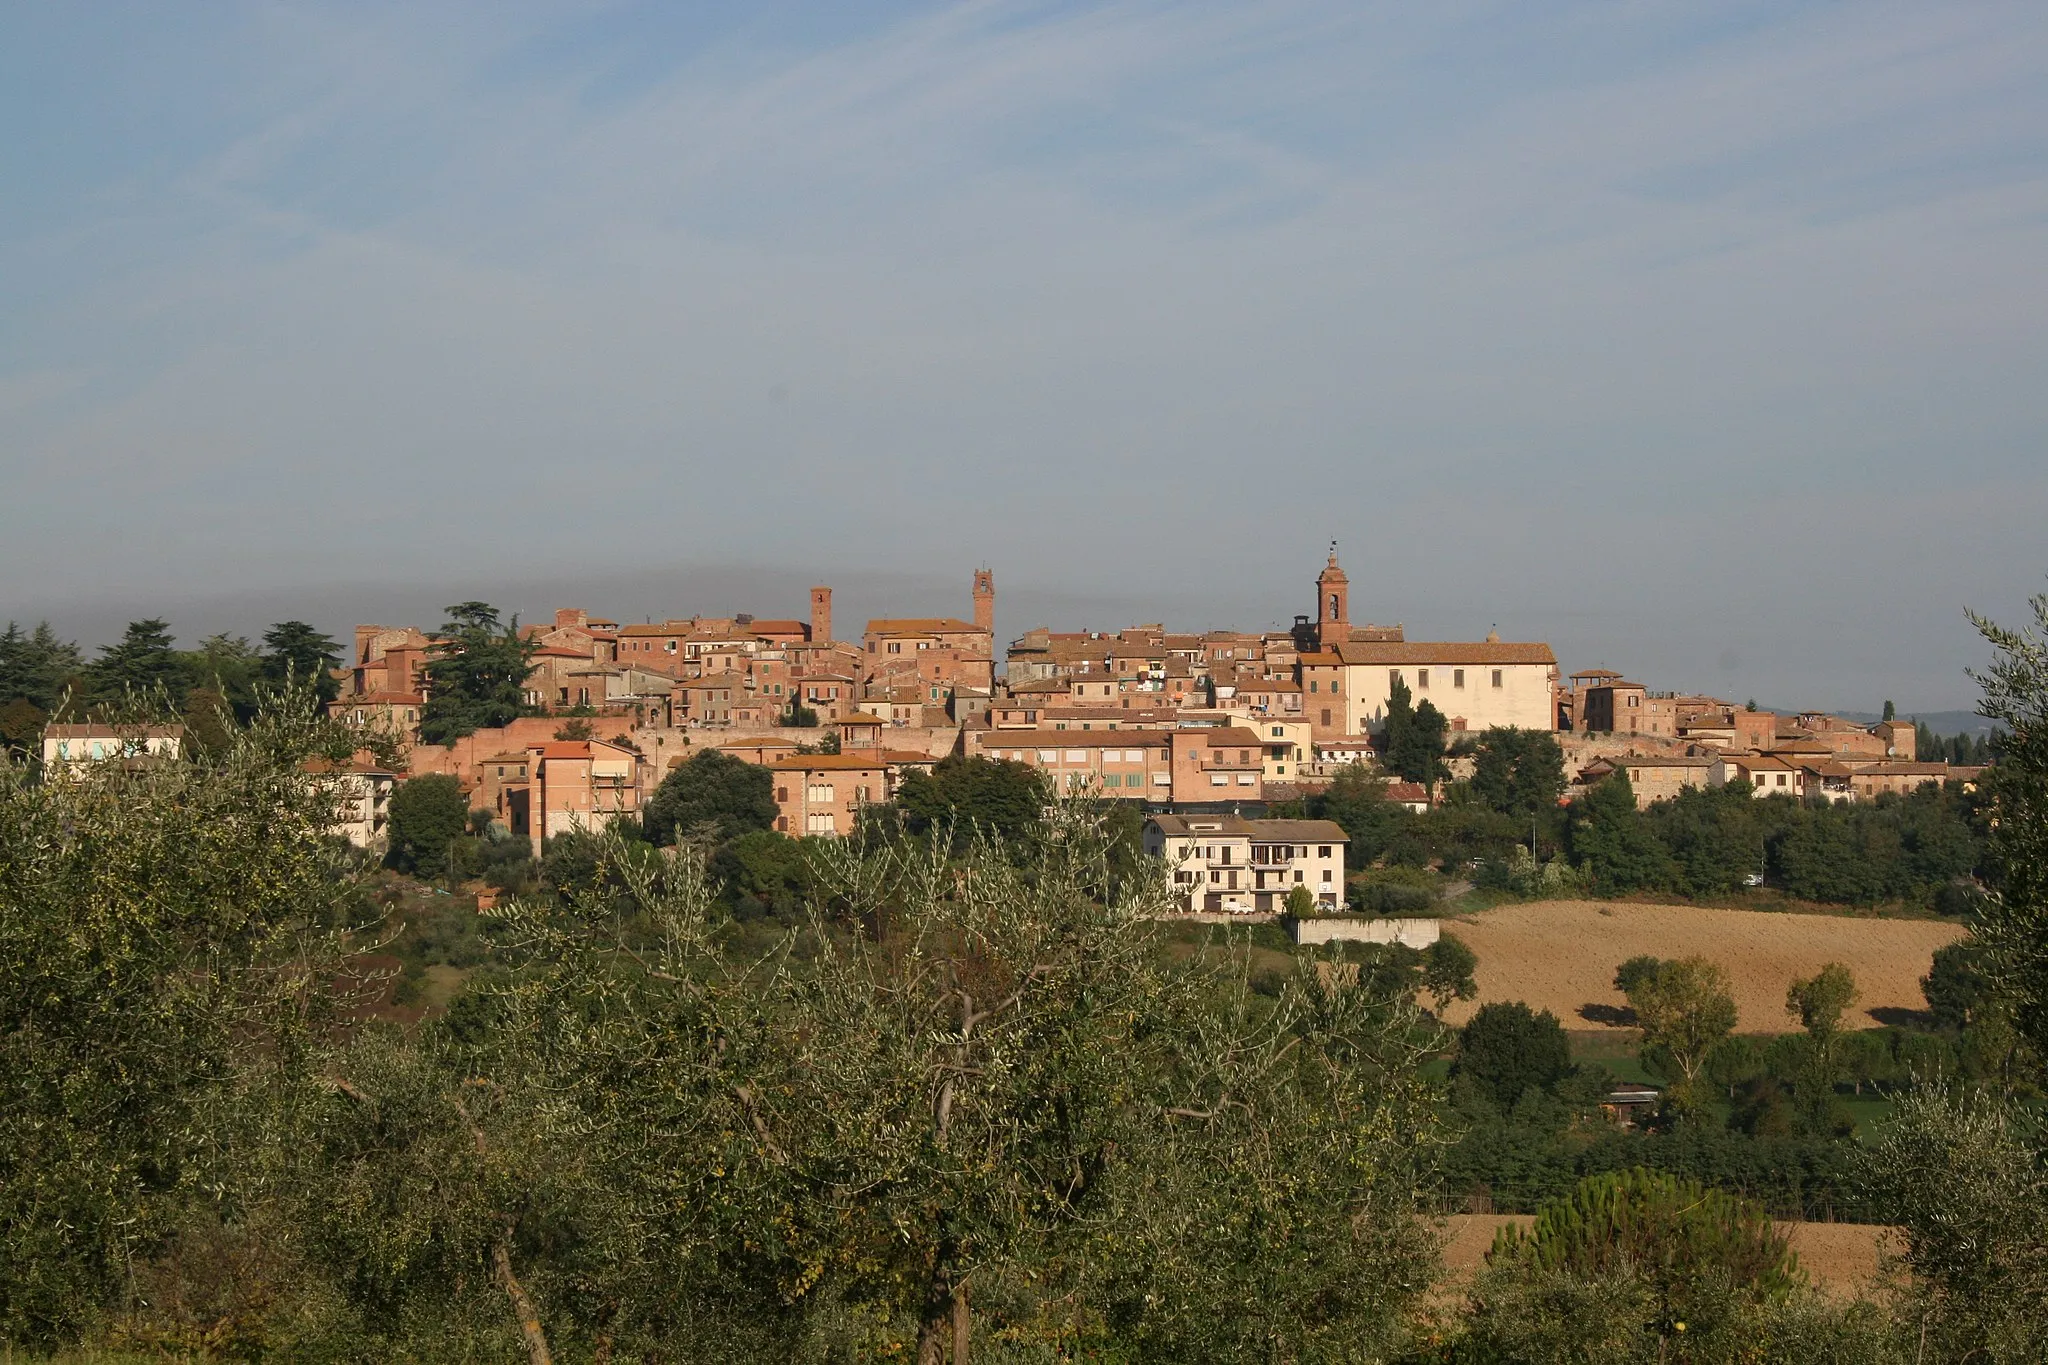 Image of Torrita di Siena